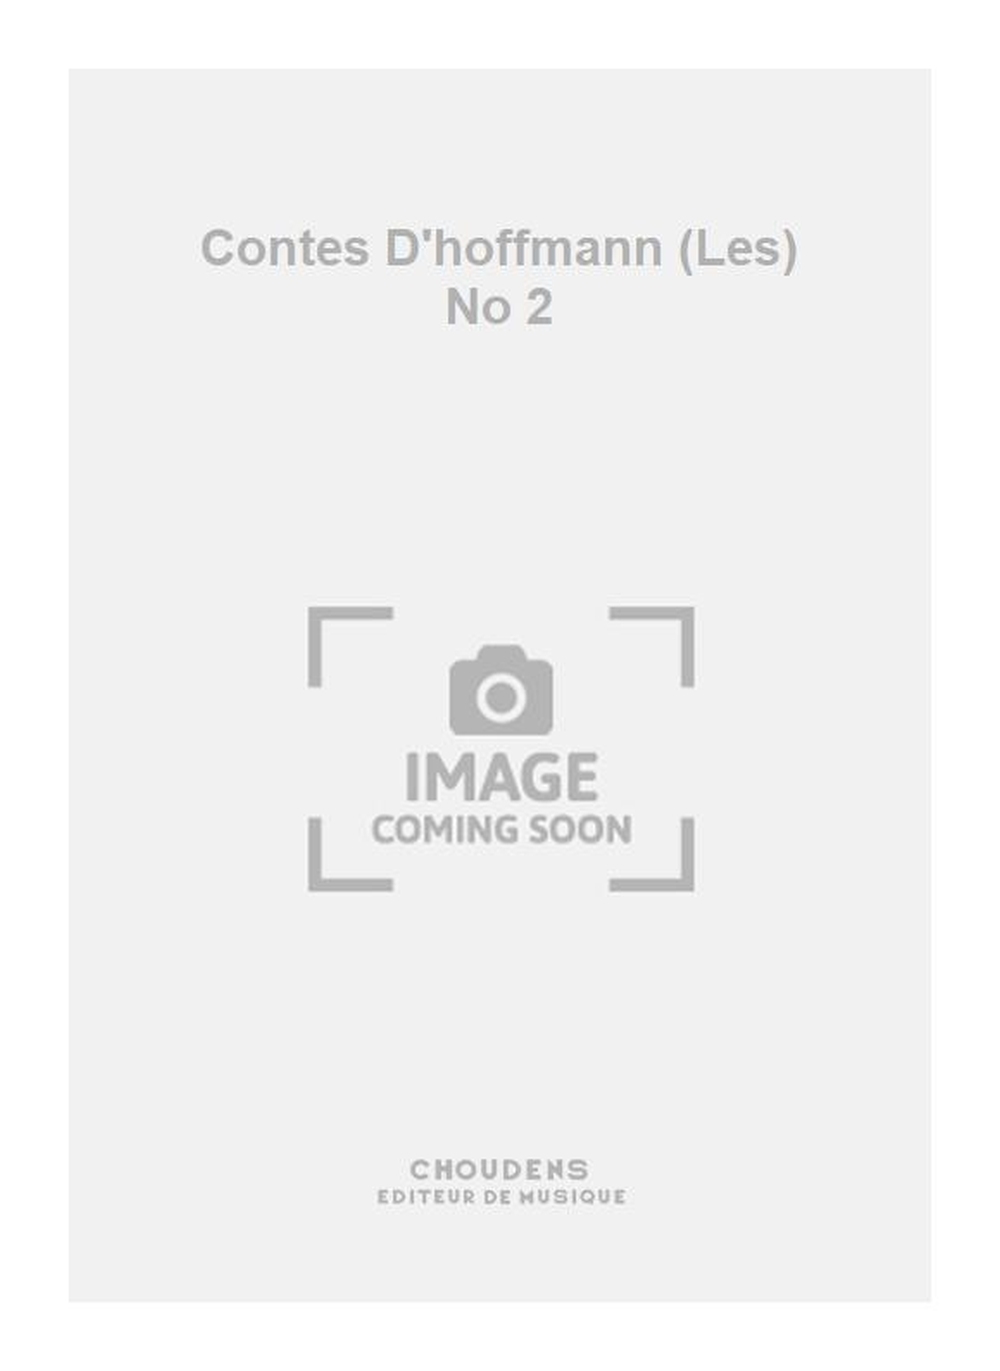 Jacques Offenbach: Contes D'hoffmann (Les) No 2